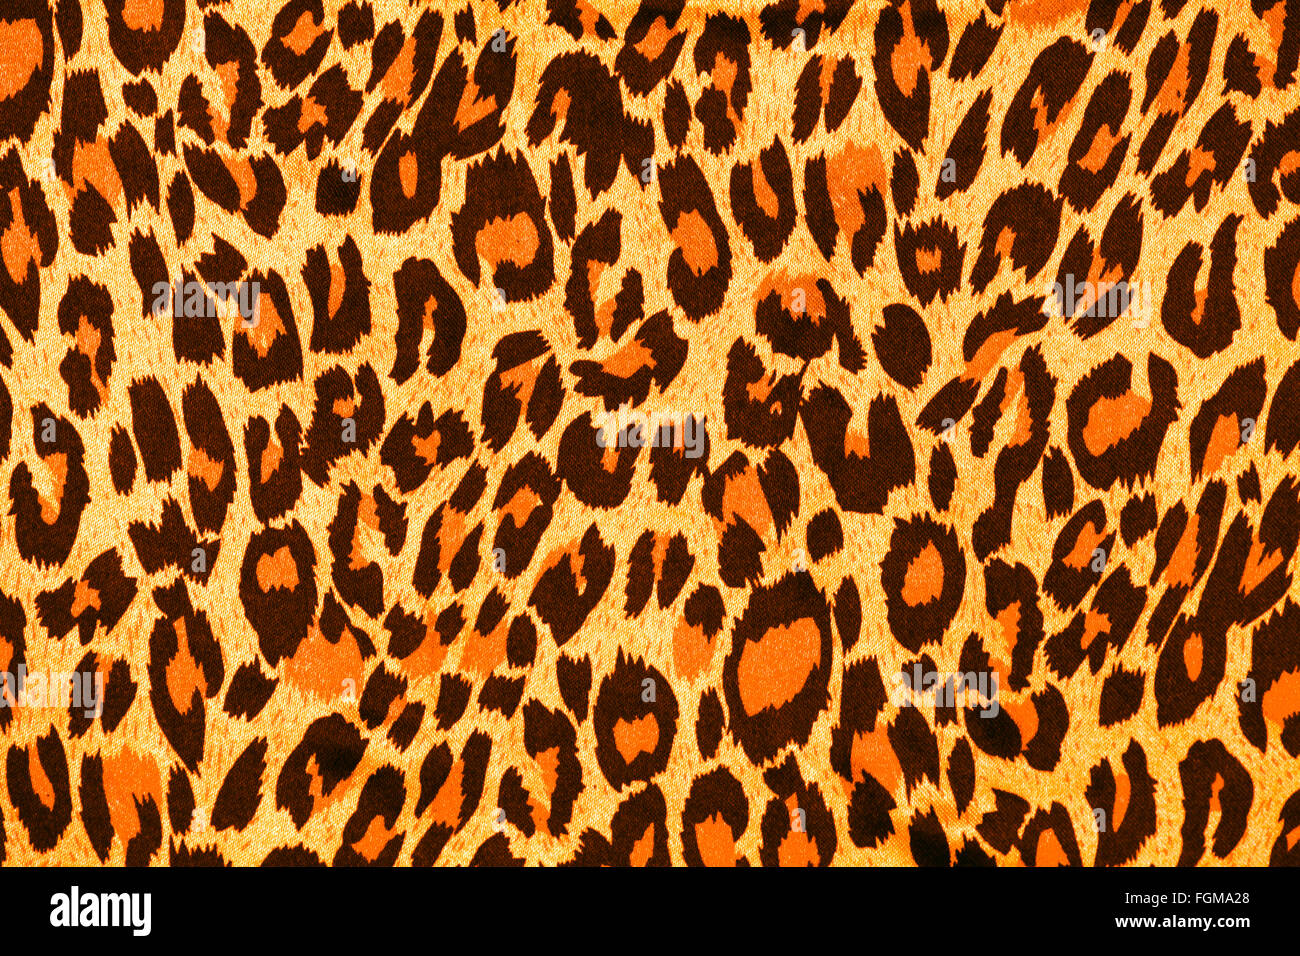 Leopard, Tier, Fell, Haut, Hintergründe, Fälschung, Design, Muster, gepunktet, Katze, Haare, gelbe, Afrika, große, strukturierte, niemand, print Stockfoto